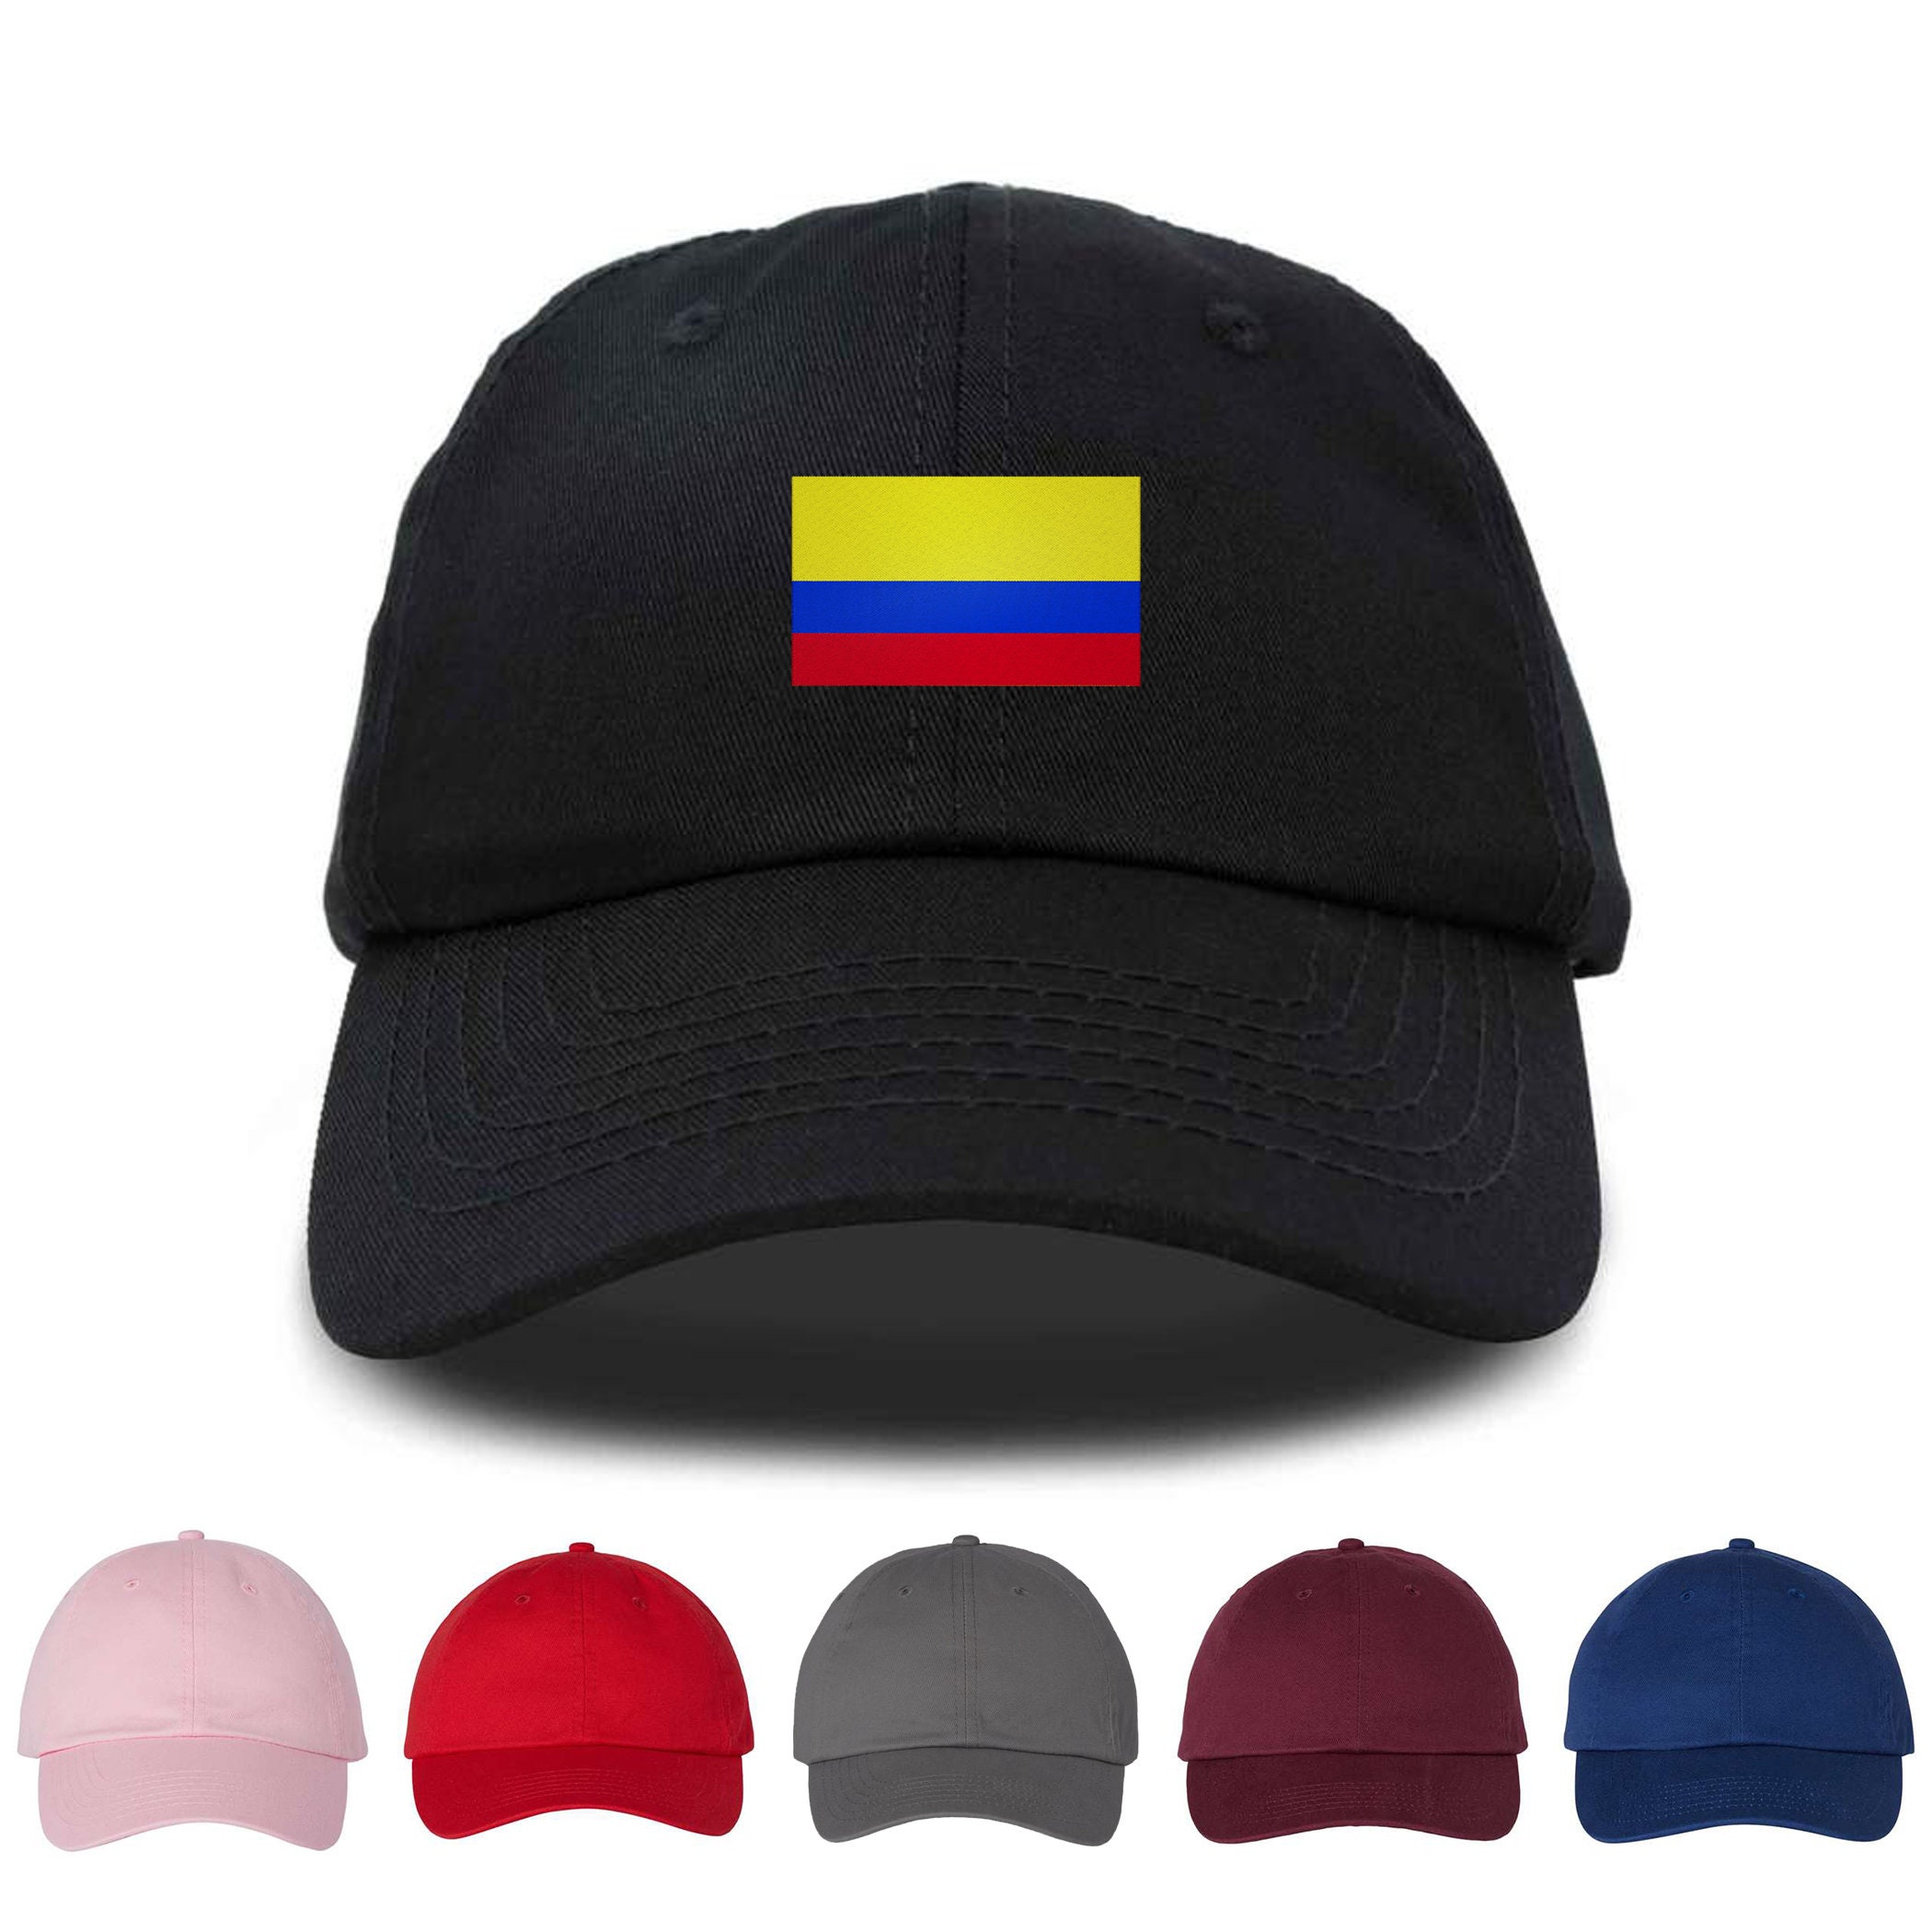 Hats - Productos de Colombia.com